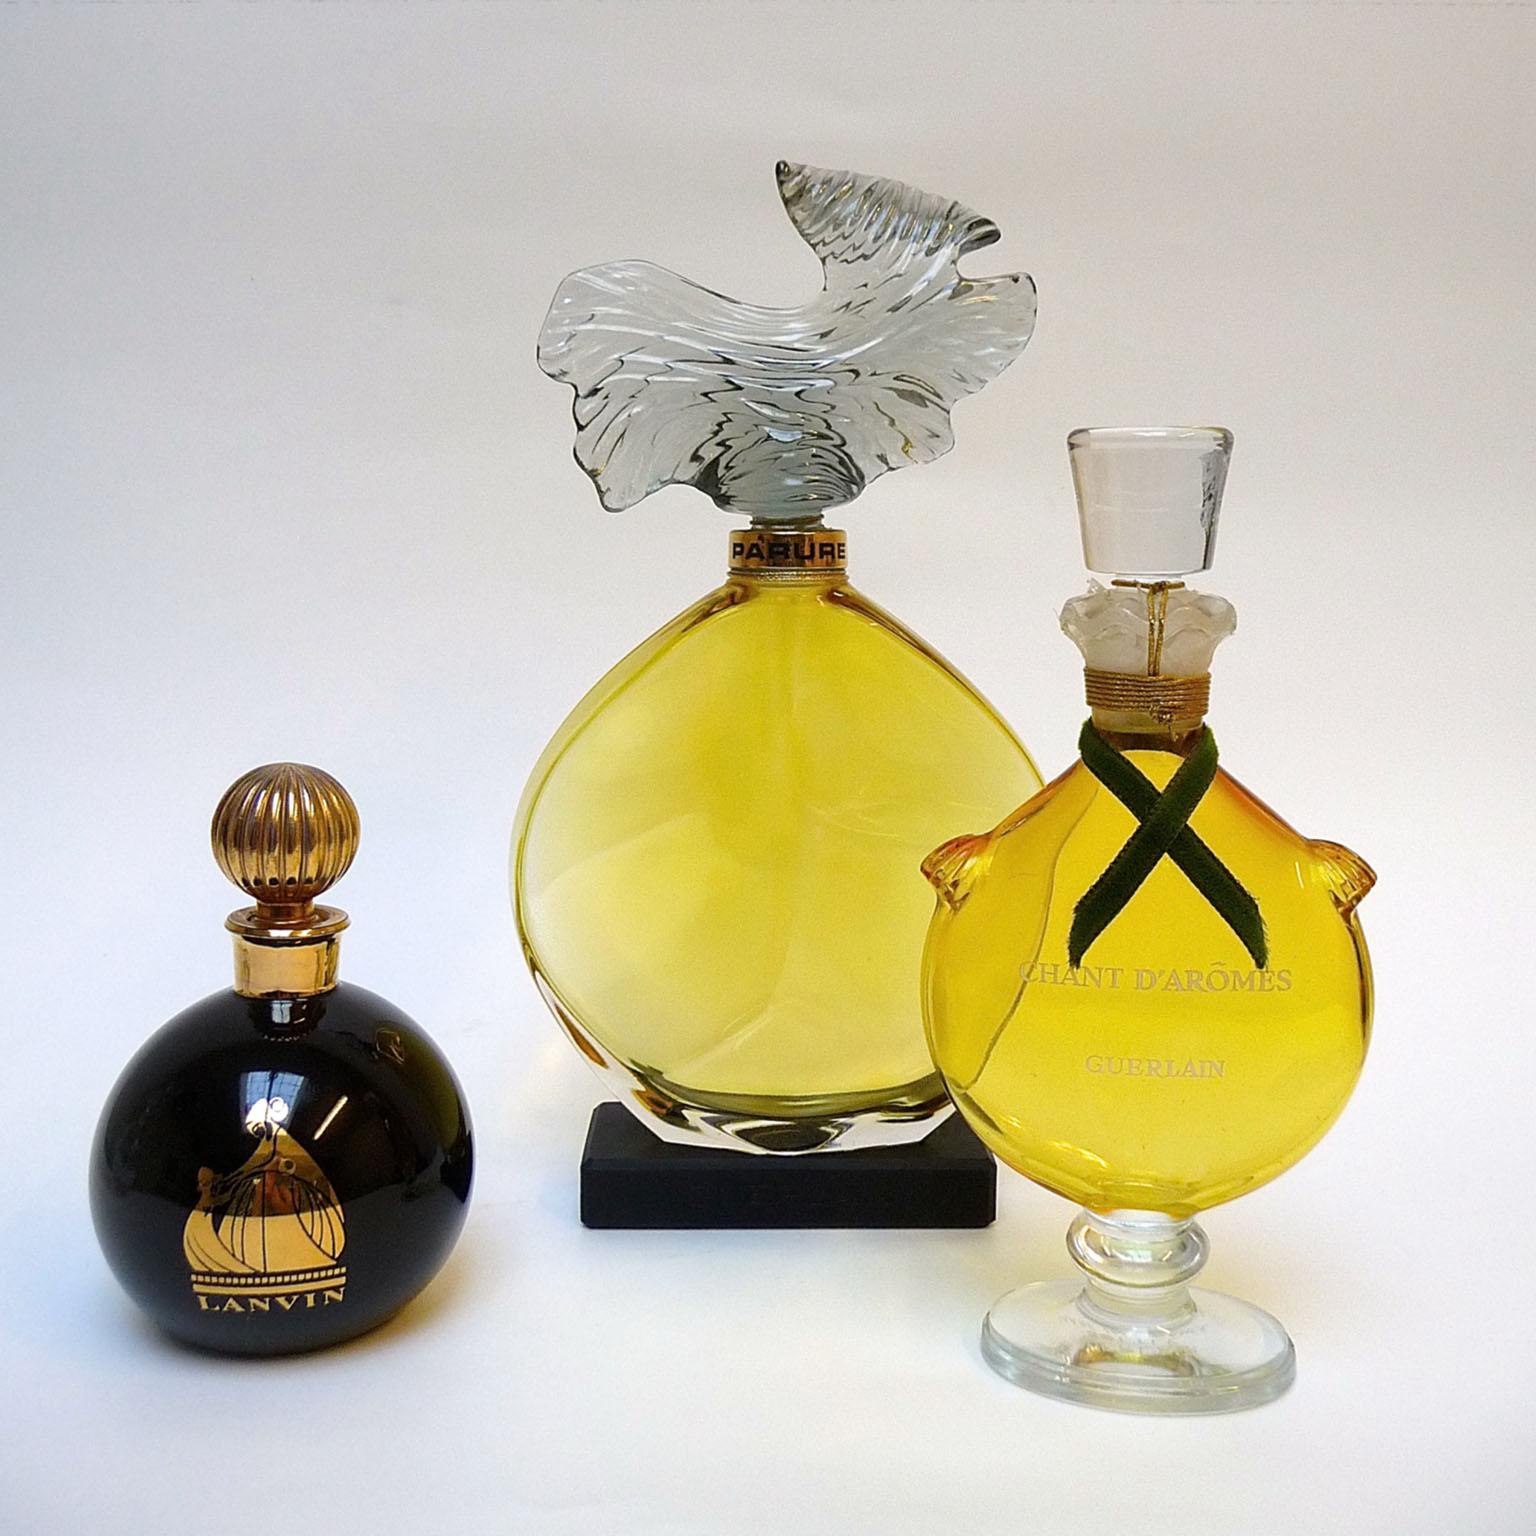 Factice Parfüm Guerlain Lanvin Geschäft Display Flaschen
Drei Parfümflakons aus einem Vintage-Laden, alle in ausgezeichnetem Zustand.
Von links nach rechts:
- Arpege Lanvin H 10 cm, schwarzer, kugelförmiger Flakon, bekannt als Boule Noire, dieser